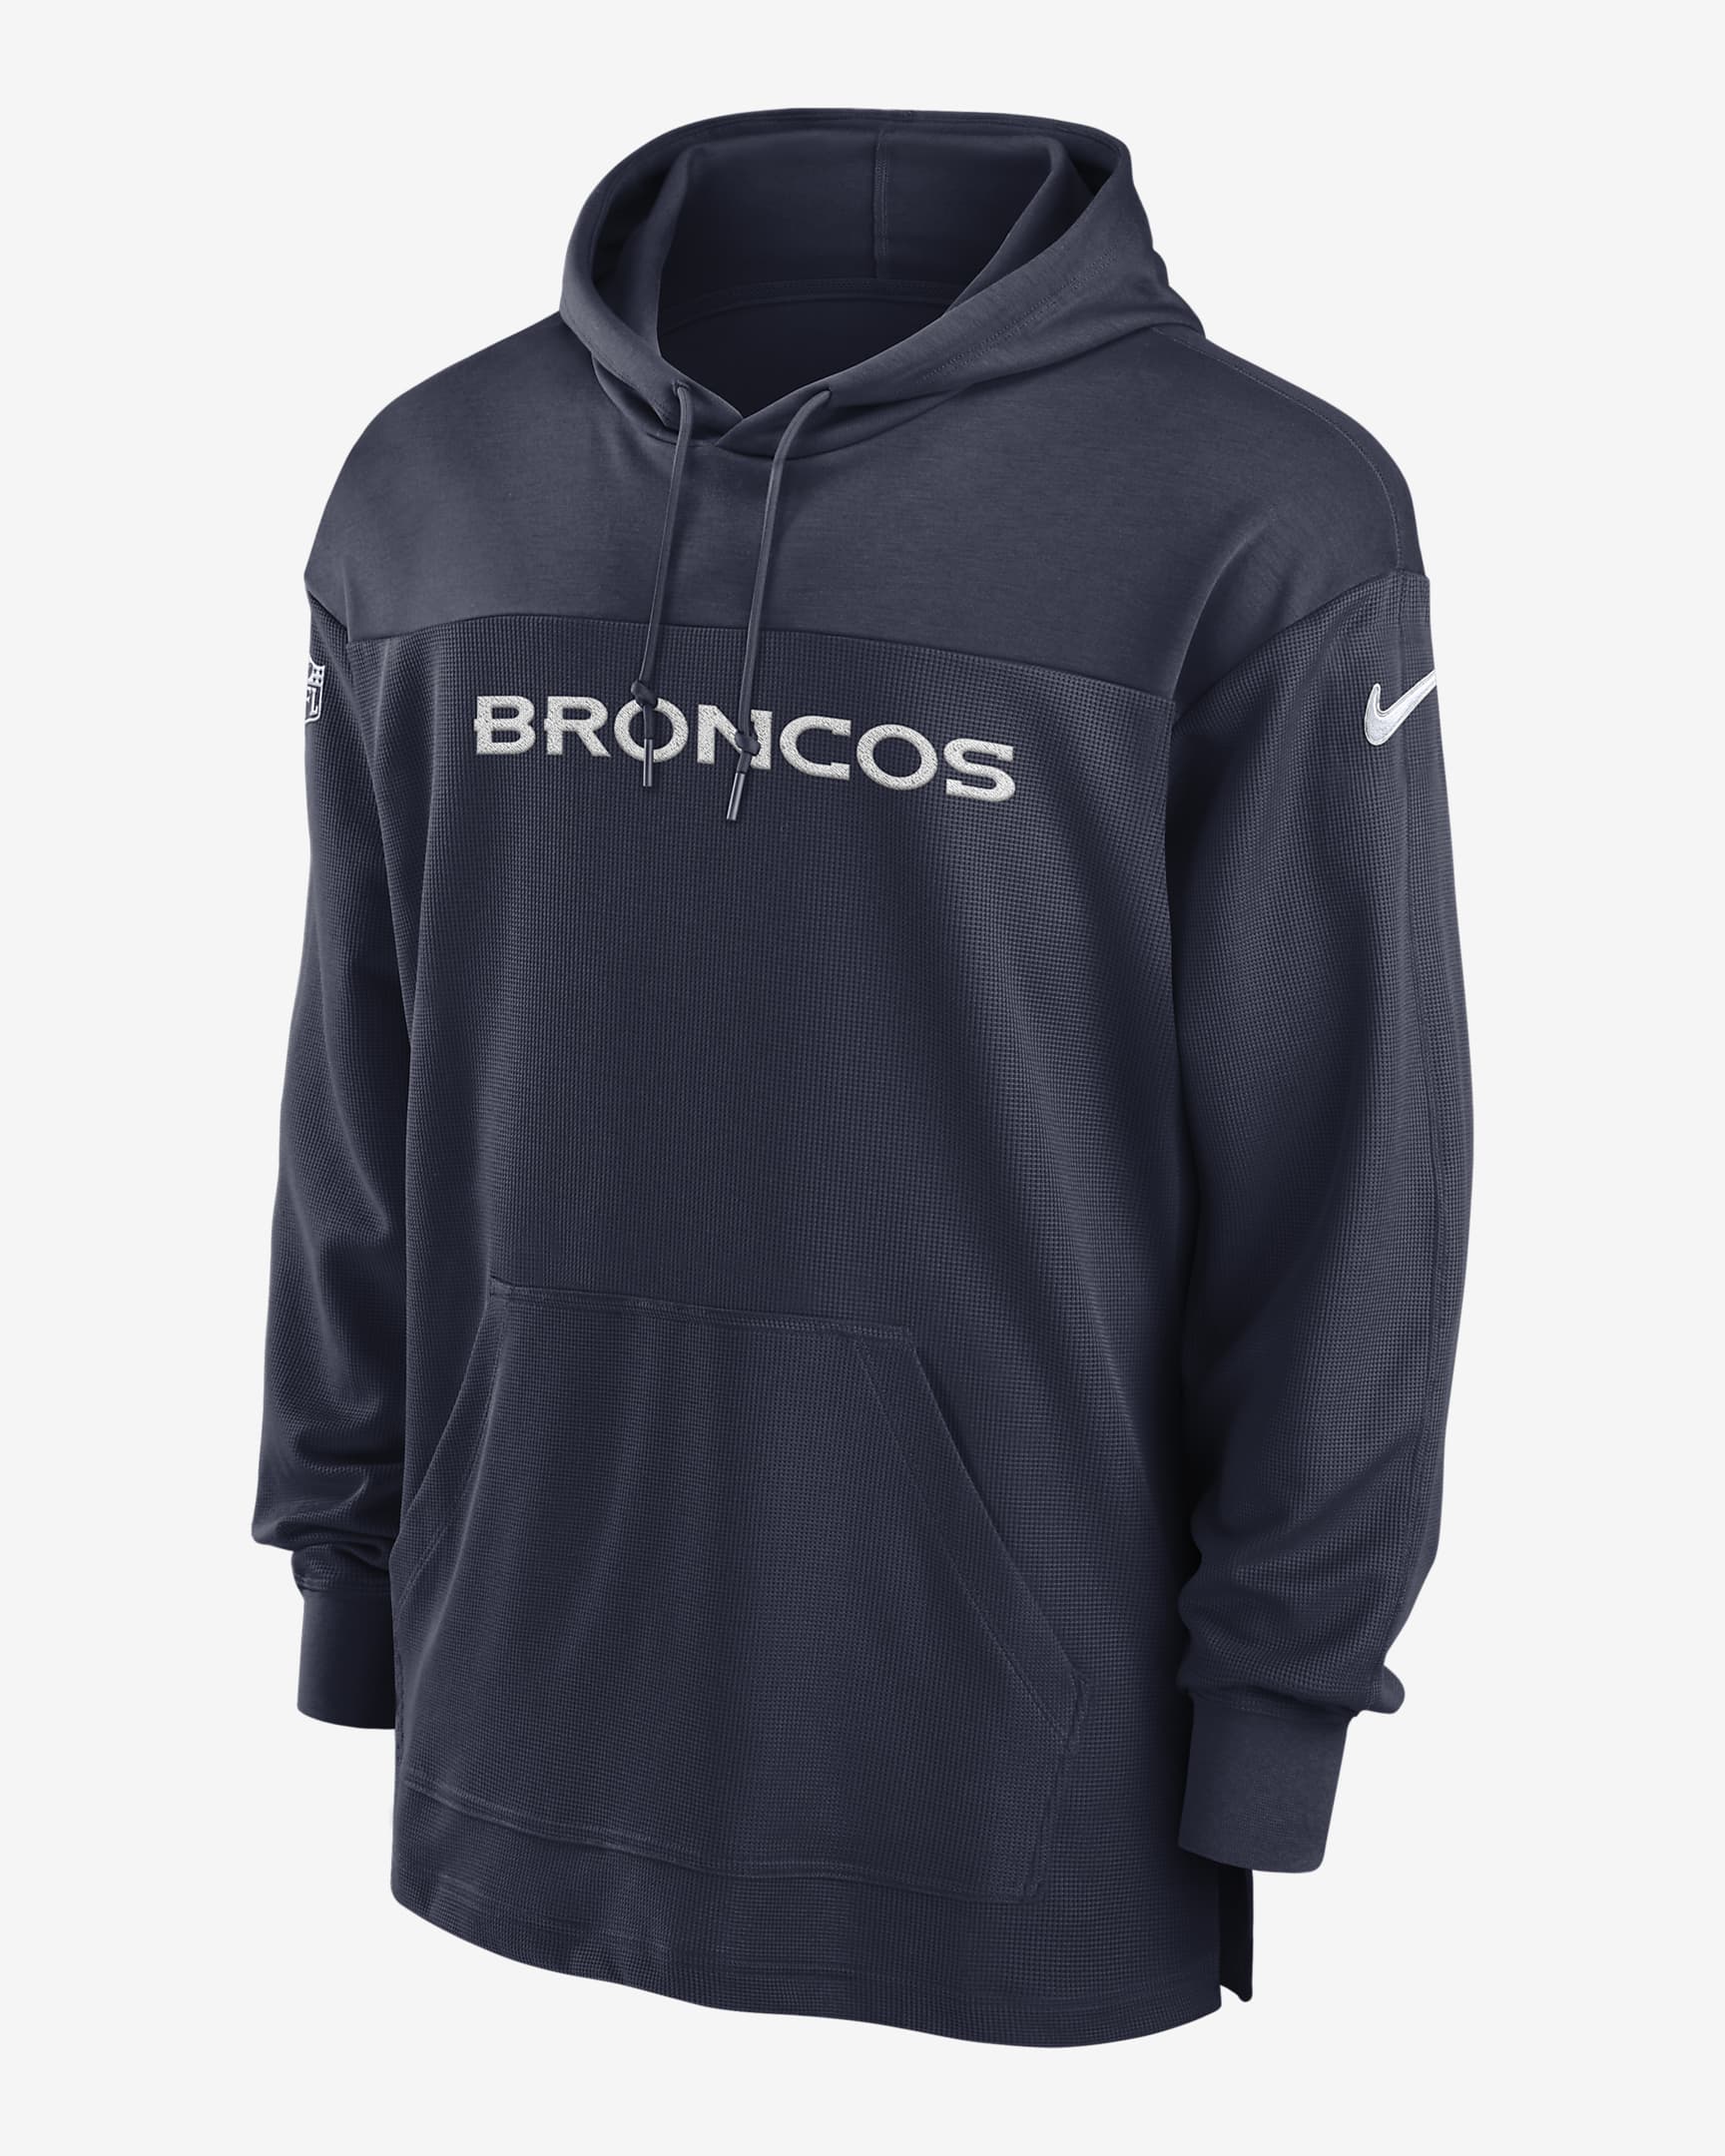 Denver Broncos Sideline Men's Nike Dri-FIT NFL Long-Sleeve Hooded Top ...